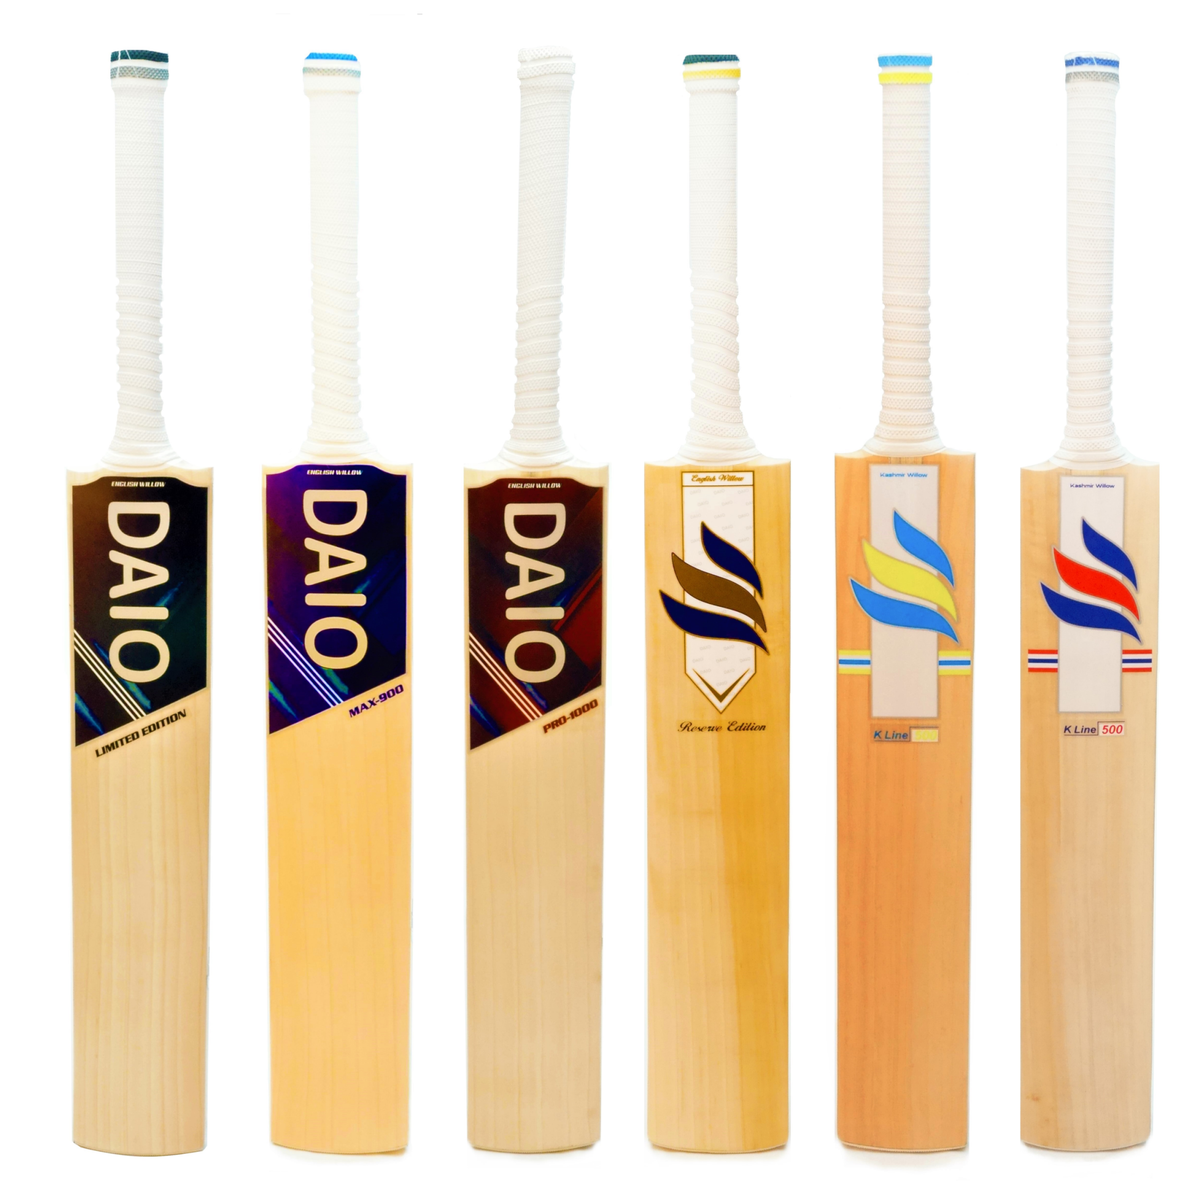 nike cricket bat images